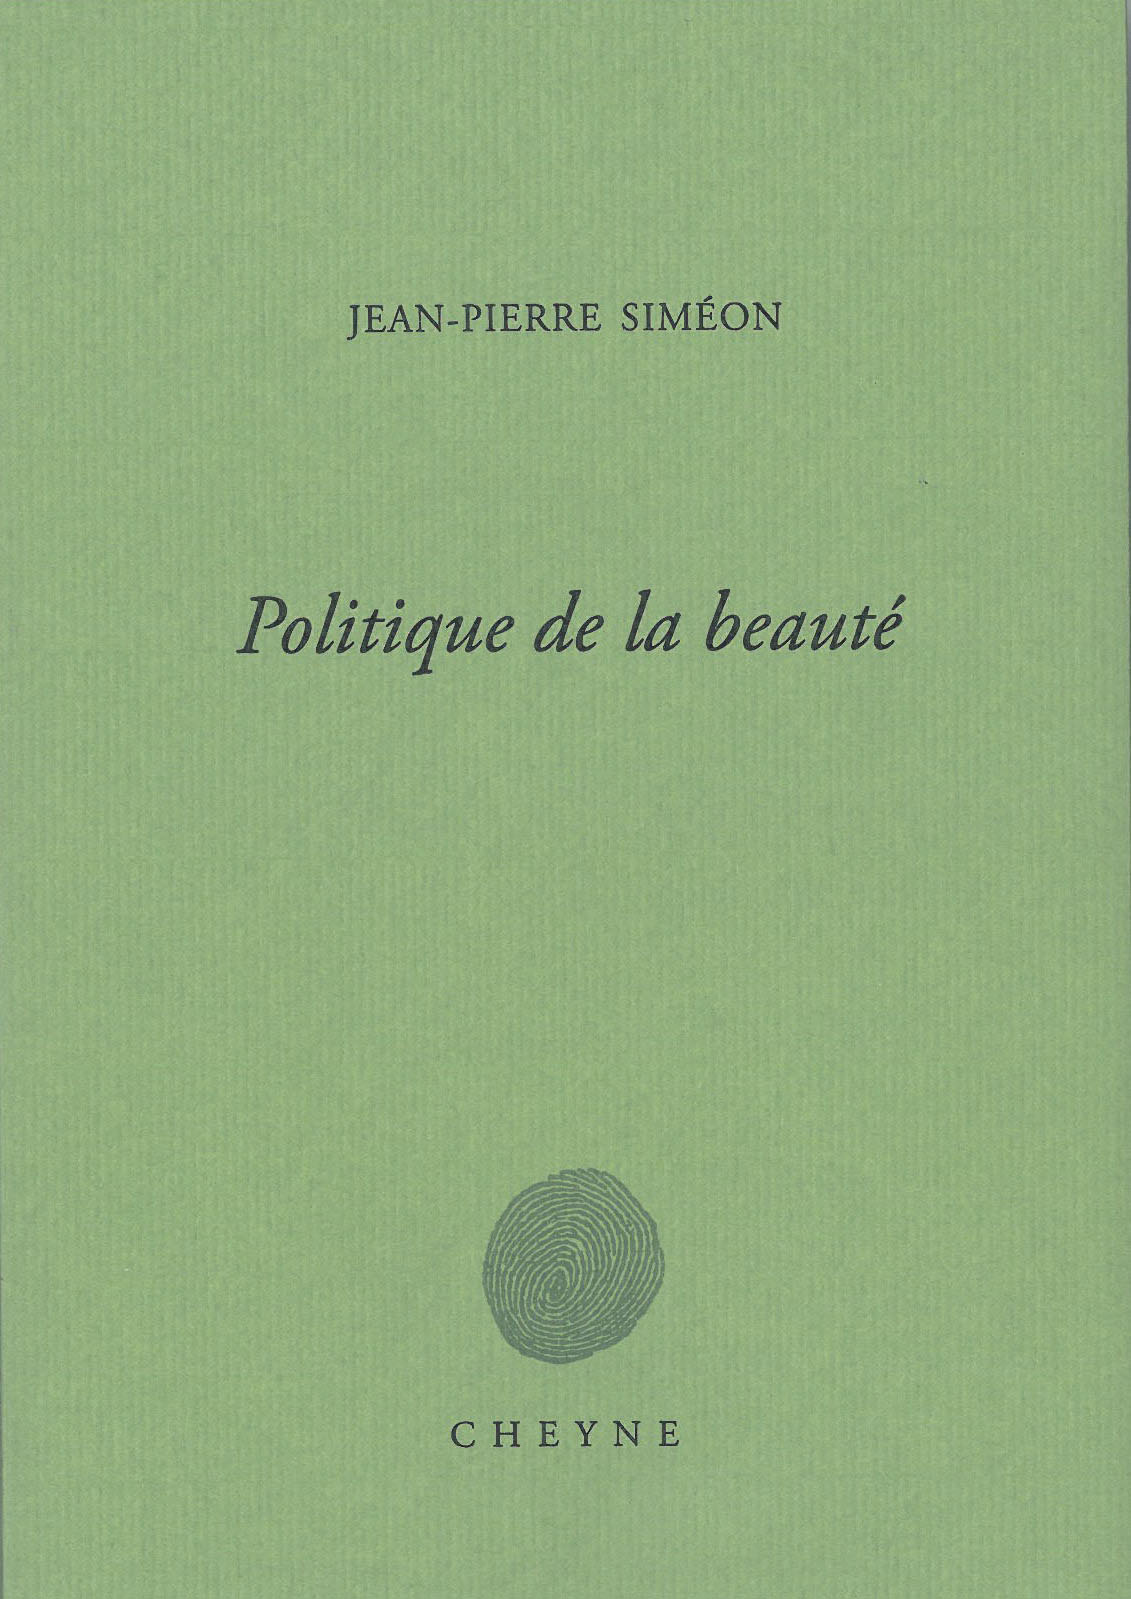 Jean-Pierre Siméon, Politique de la beauté, Cheyne éditeur, août 2017